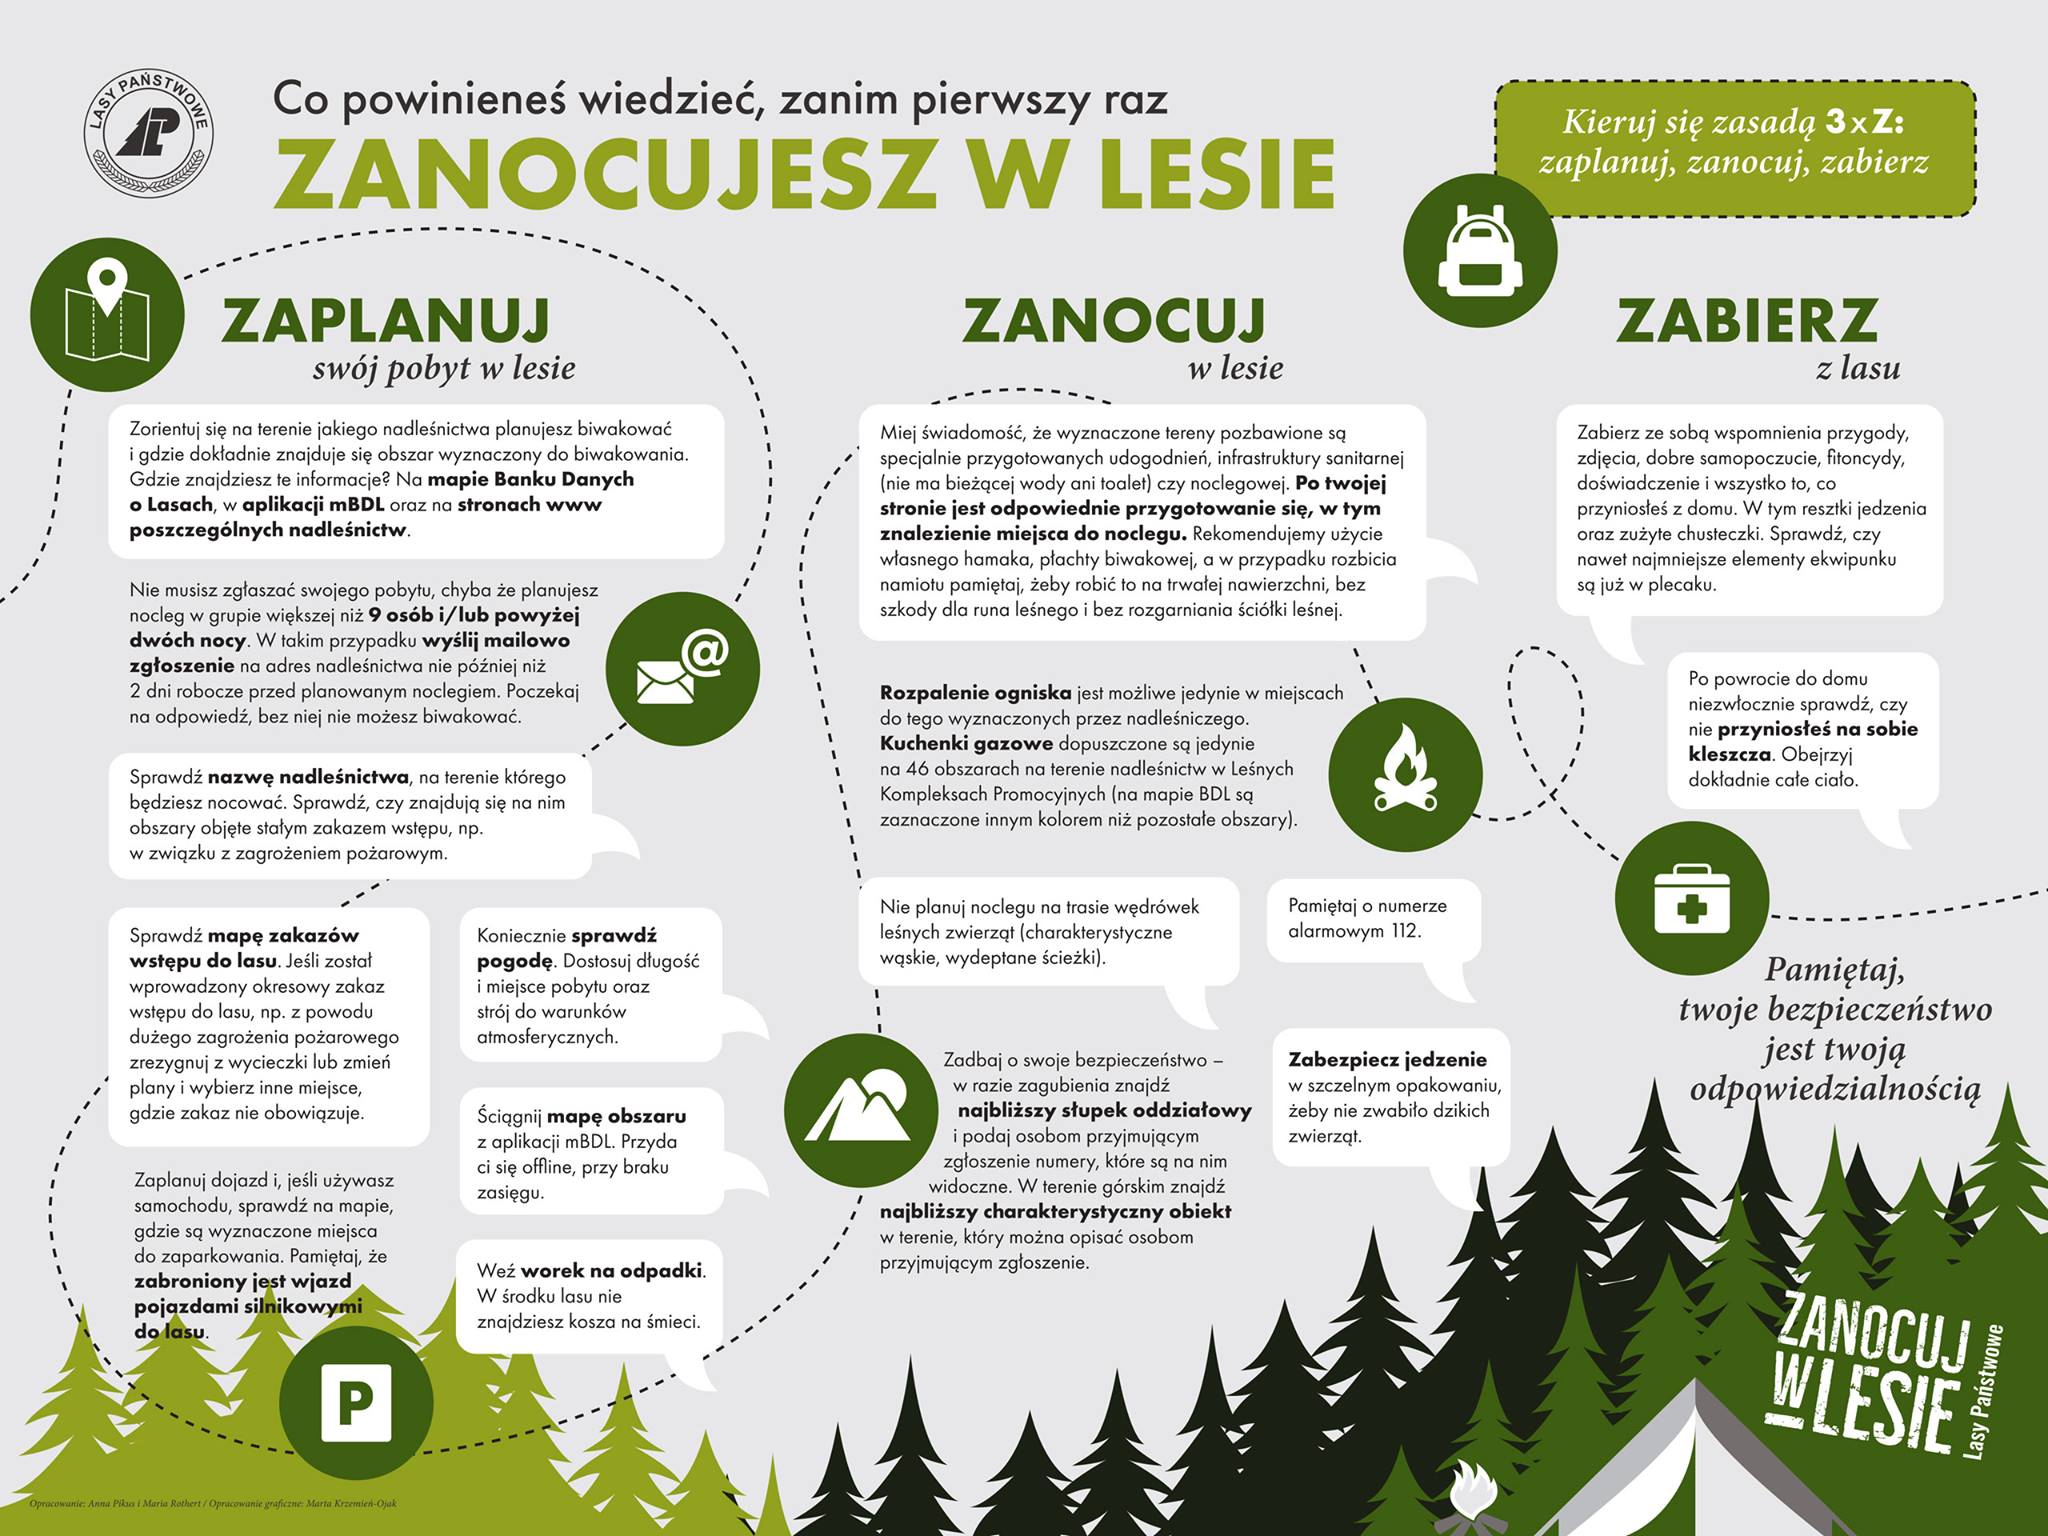 Infografika Zanocuj w lesie oprac. Centrum Informacyjne Lasów Państwowych